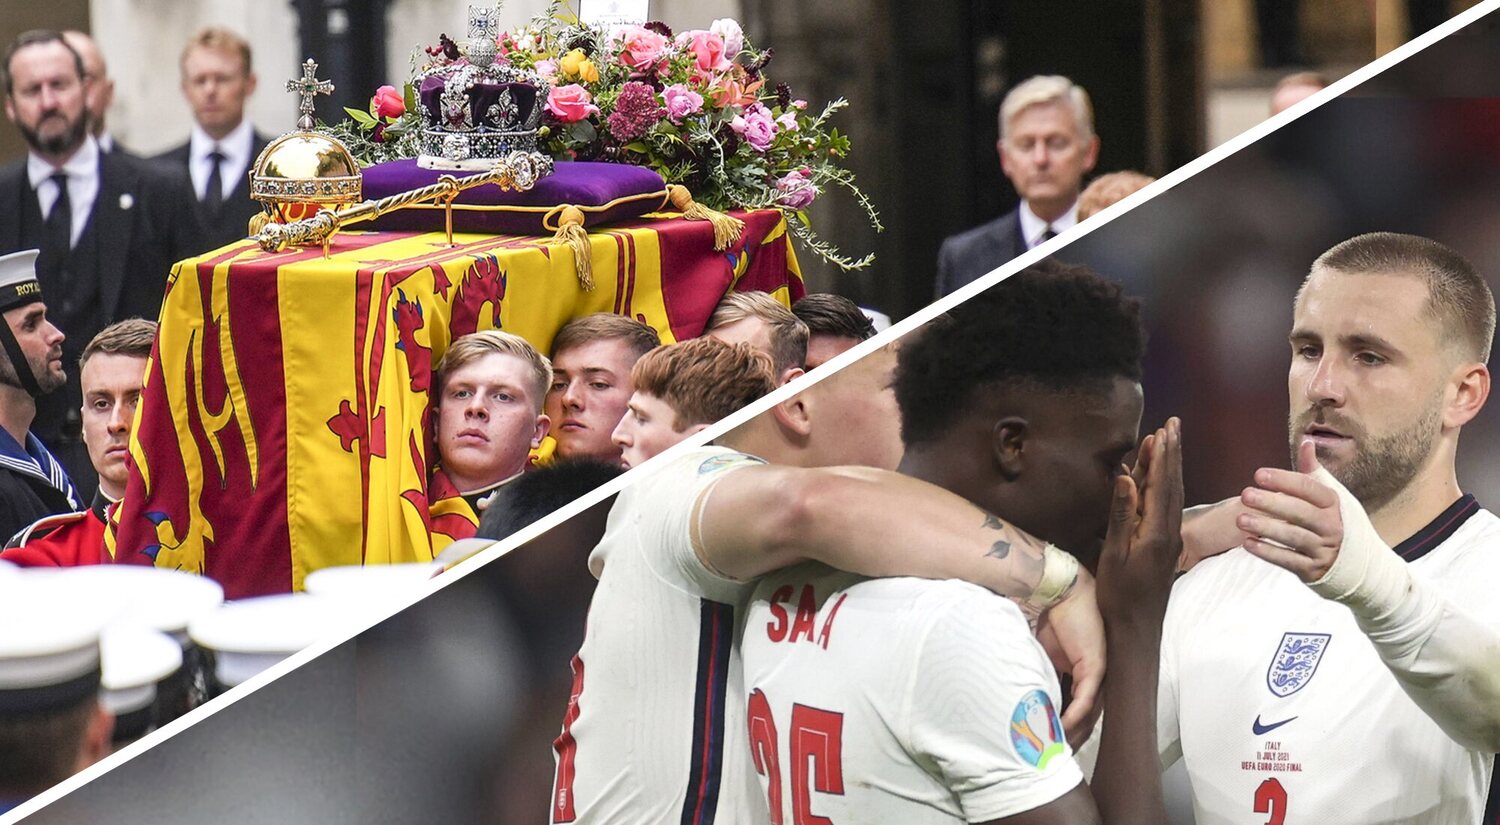 El funeral de Isabel II, menos visto que la final de la Euro 2020